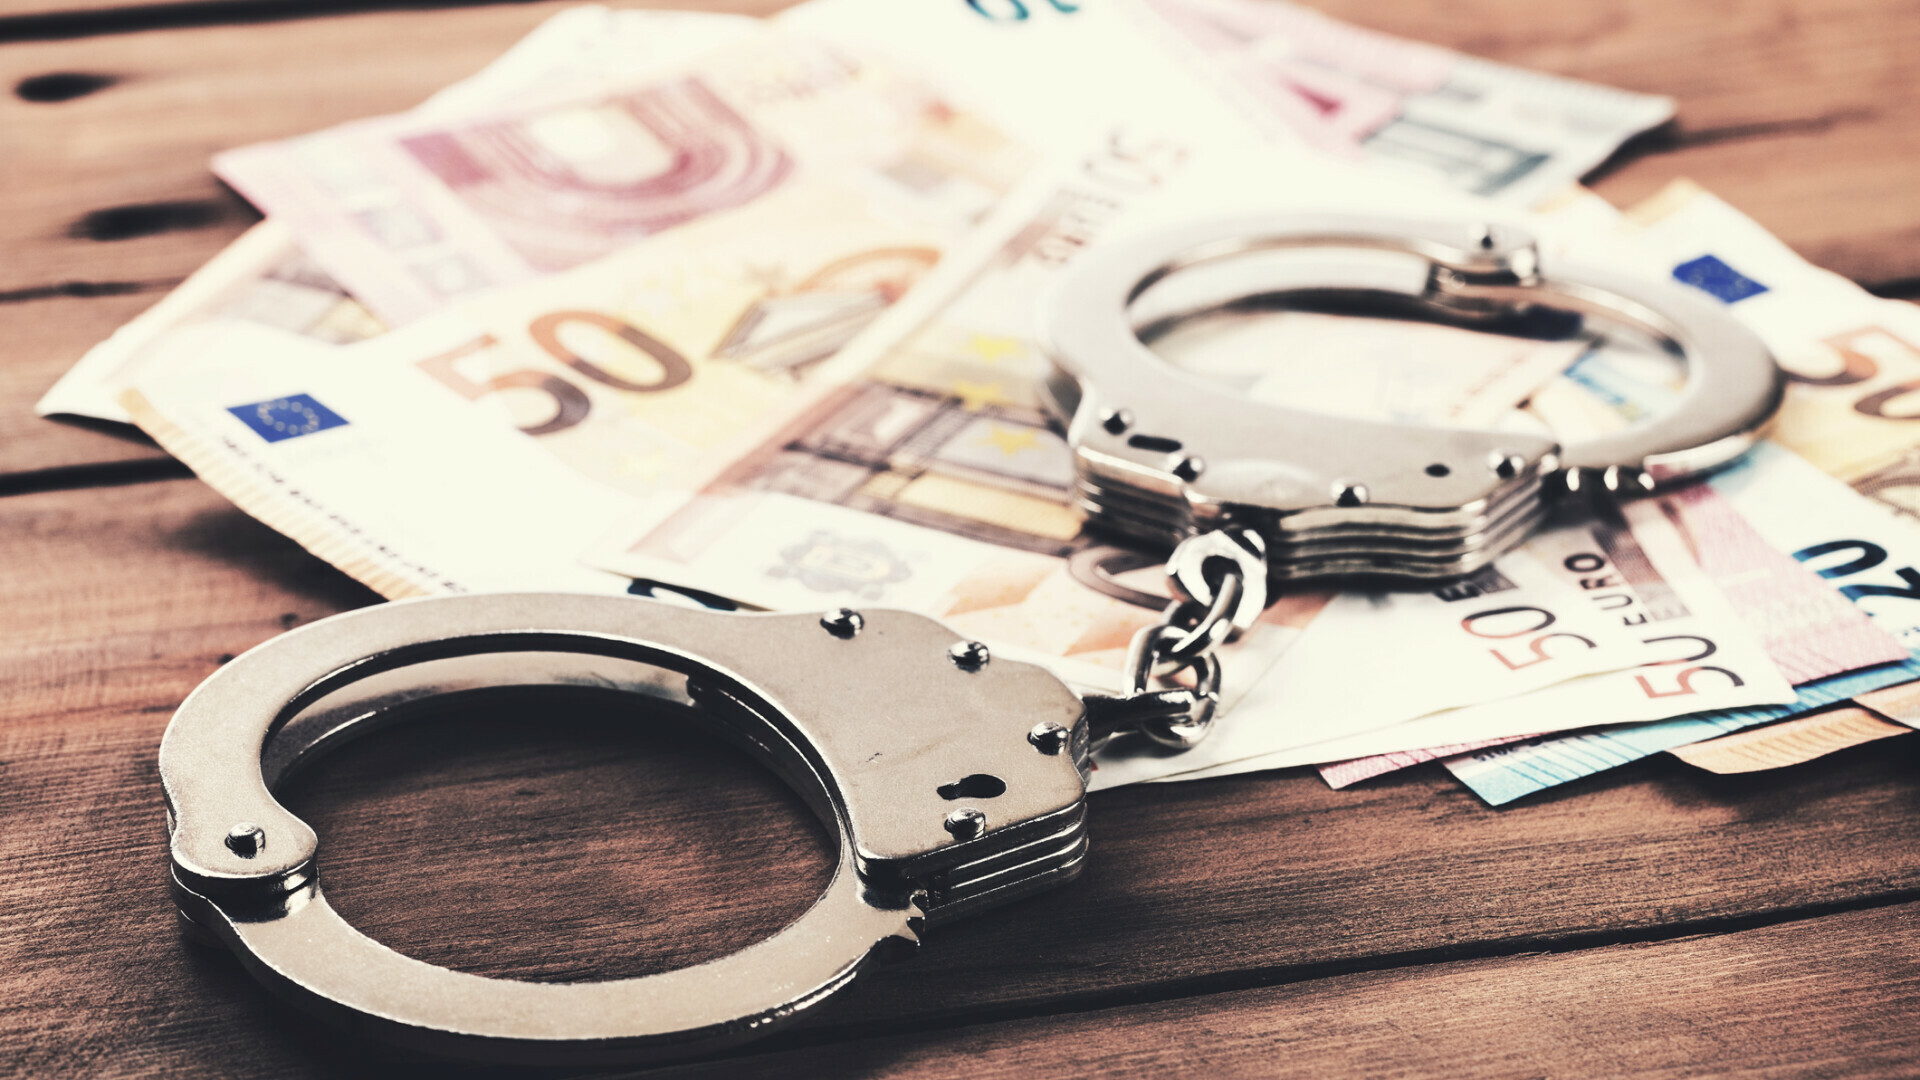 Hrvatska se zbog milijunske utaje poreza našla na karti financijskog kriminala u Europskoj Uniji